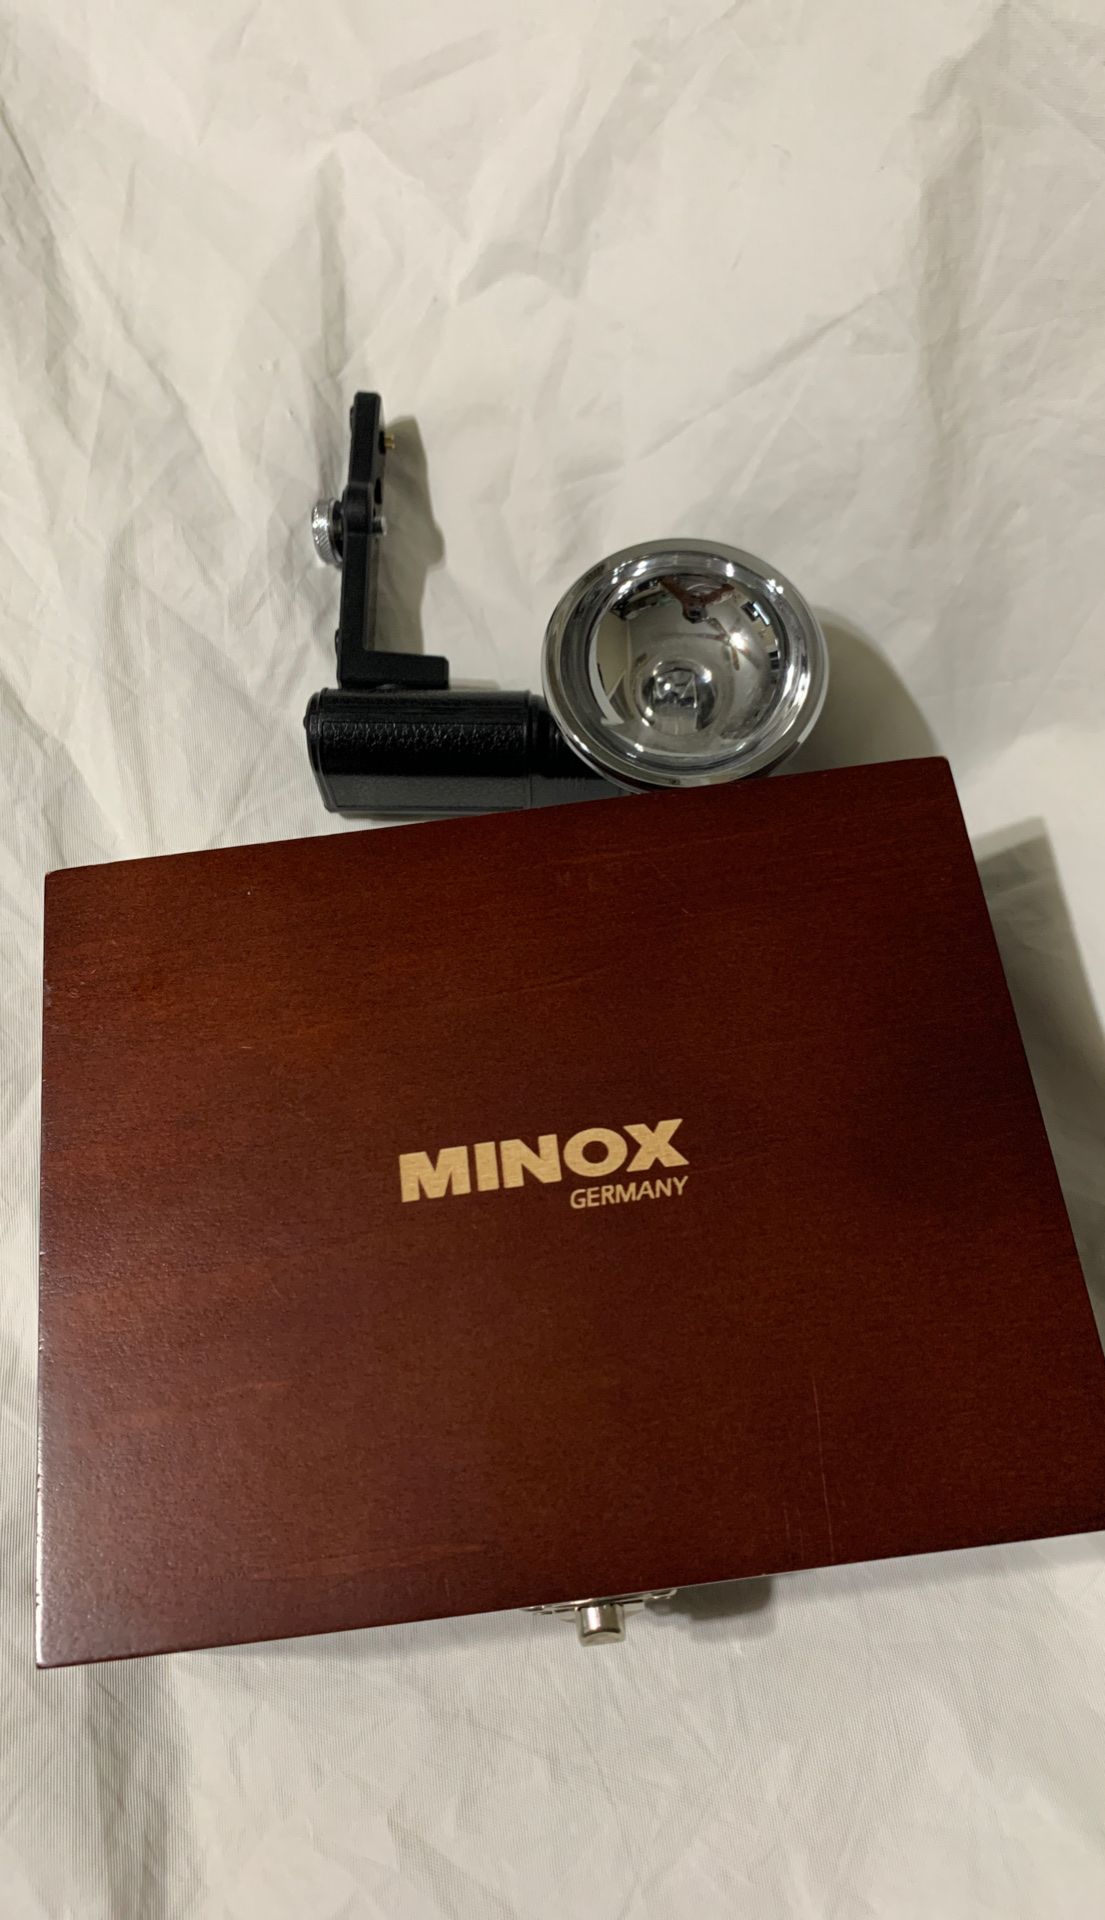 Leica Minox M3 Digital mini camera